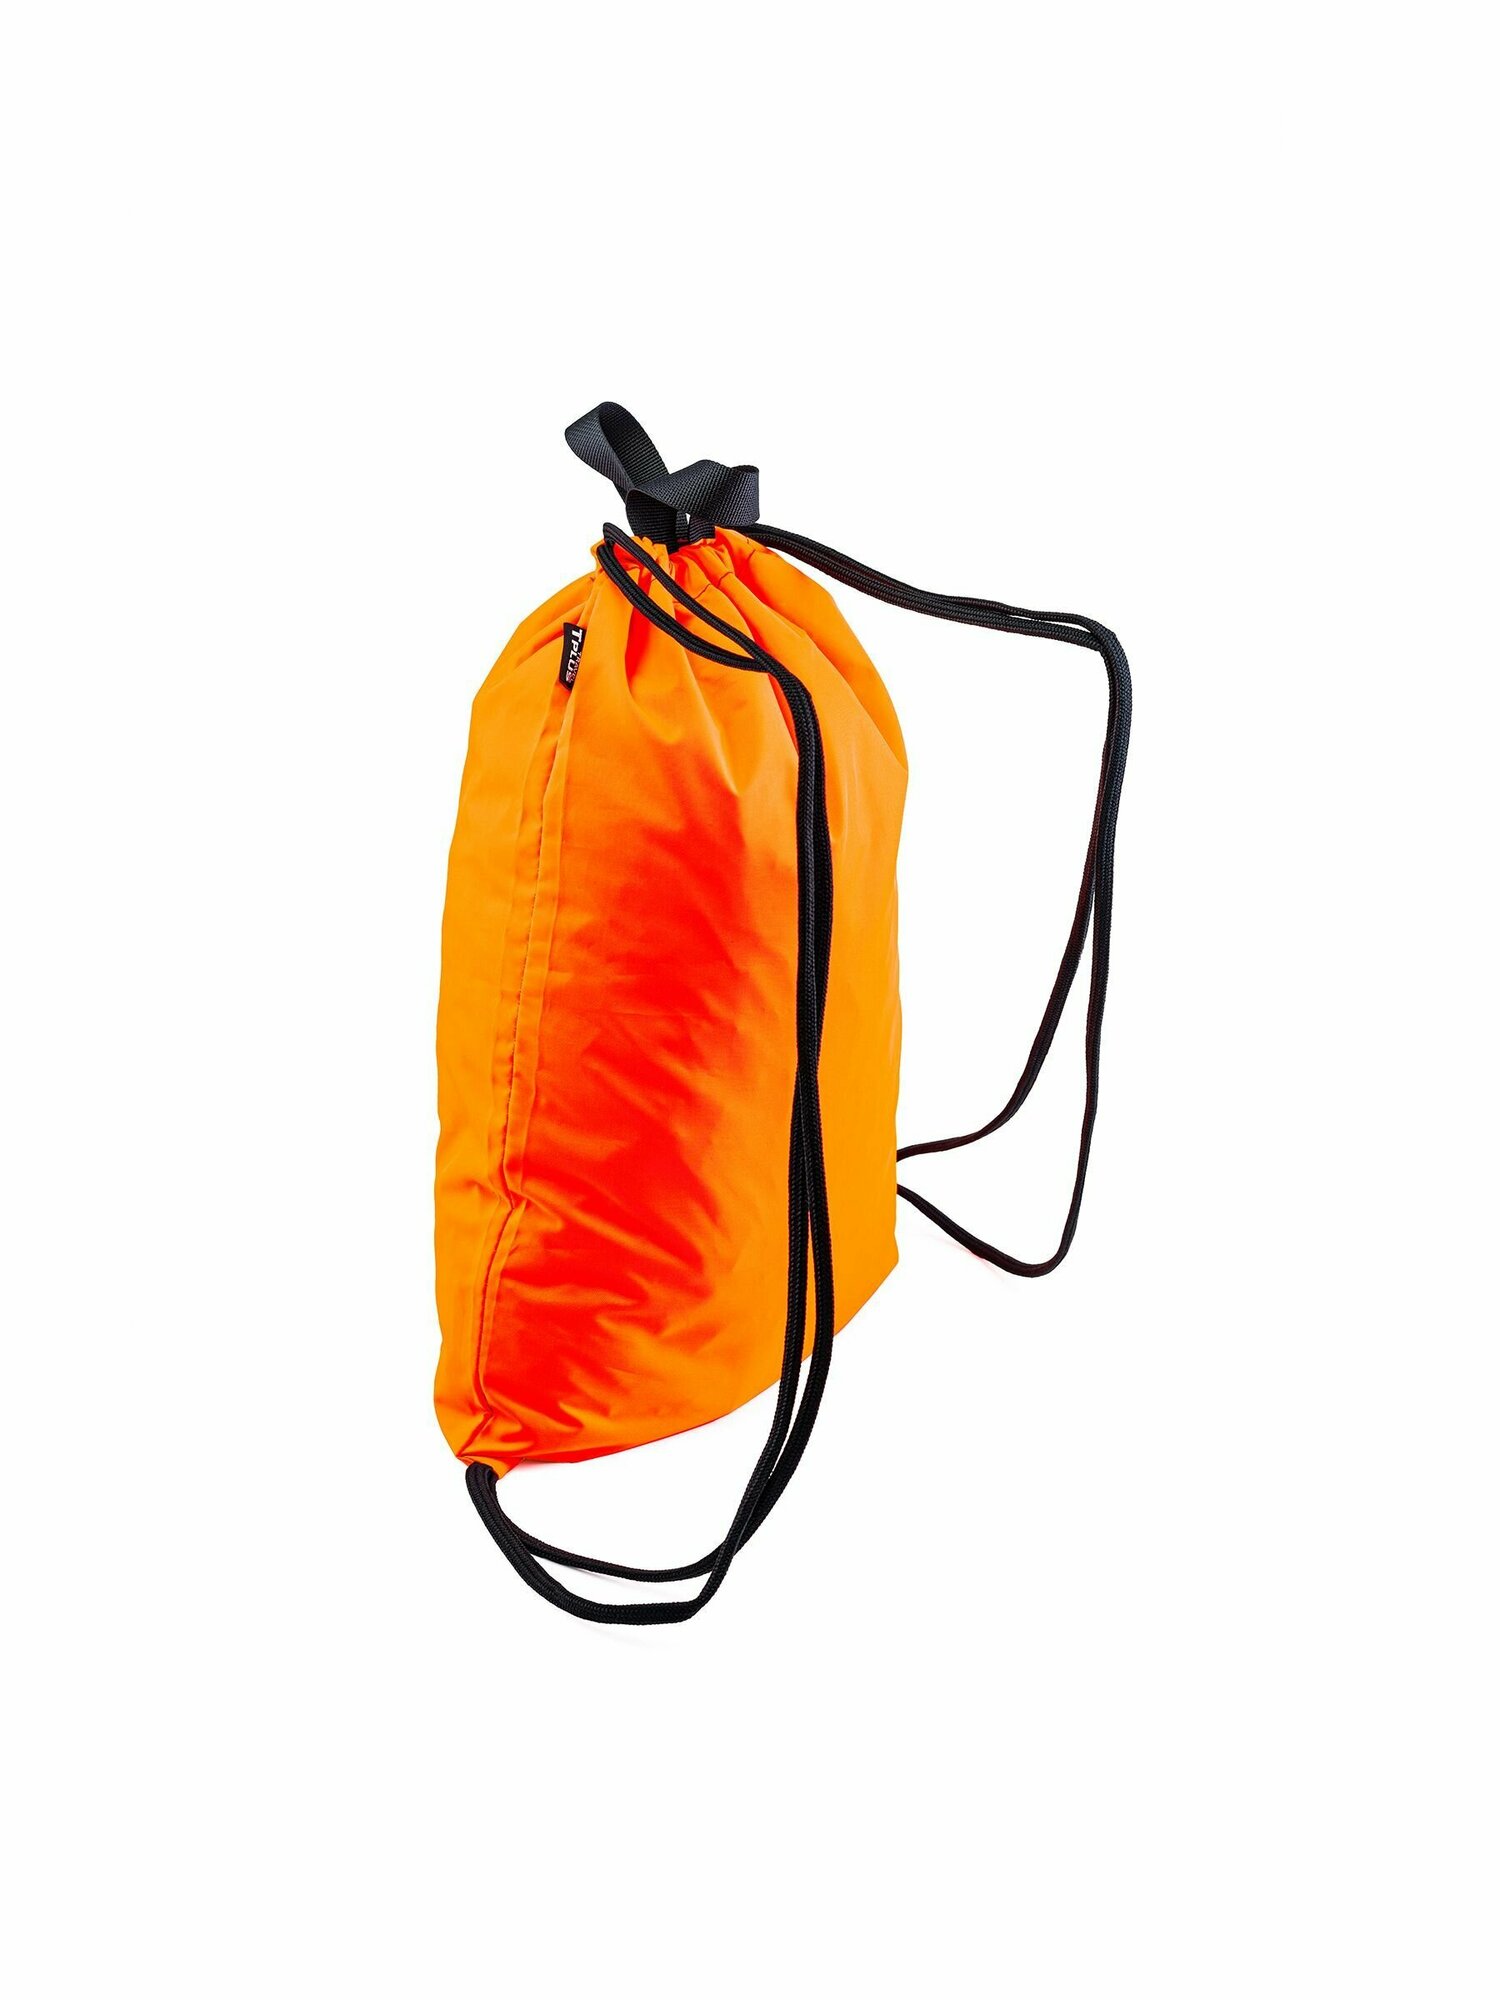 Мешок для обуви, Рюкзак для спорта универсальный 470x330 мм (оксфорд 240, оранжевый), Tplus